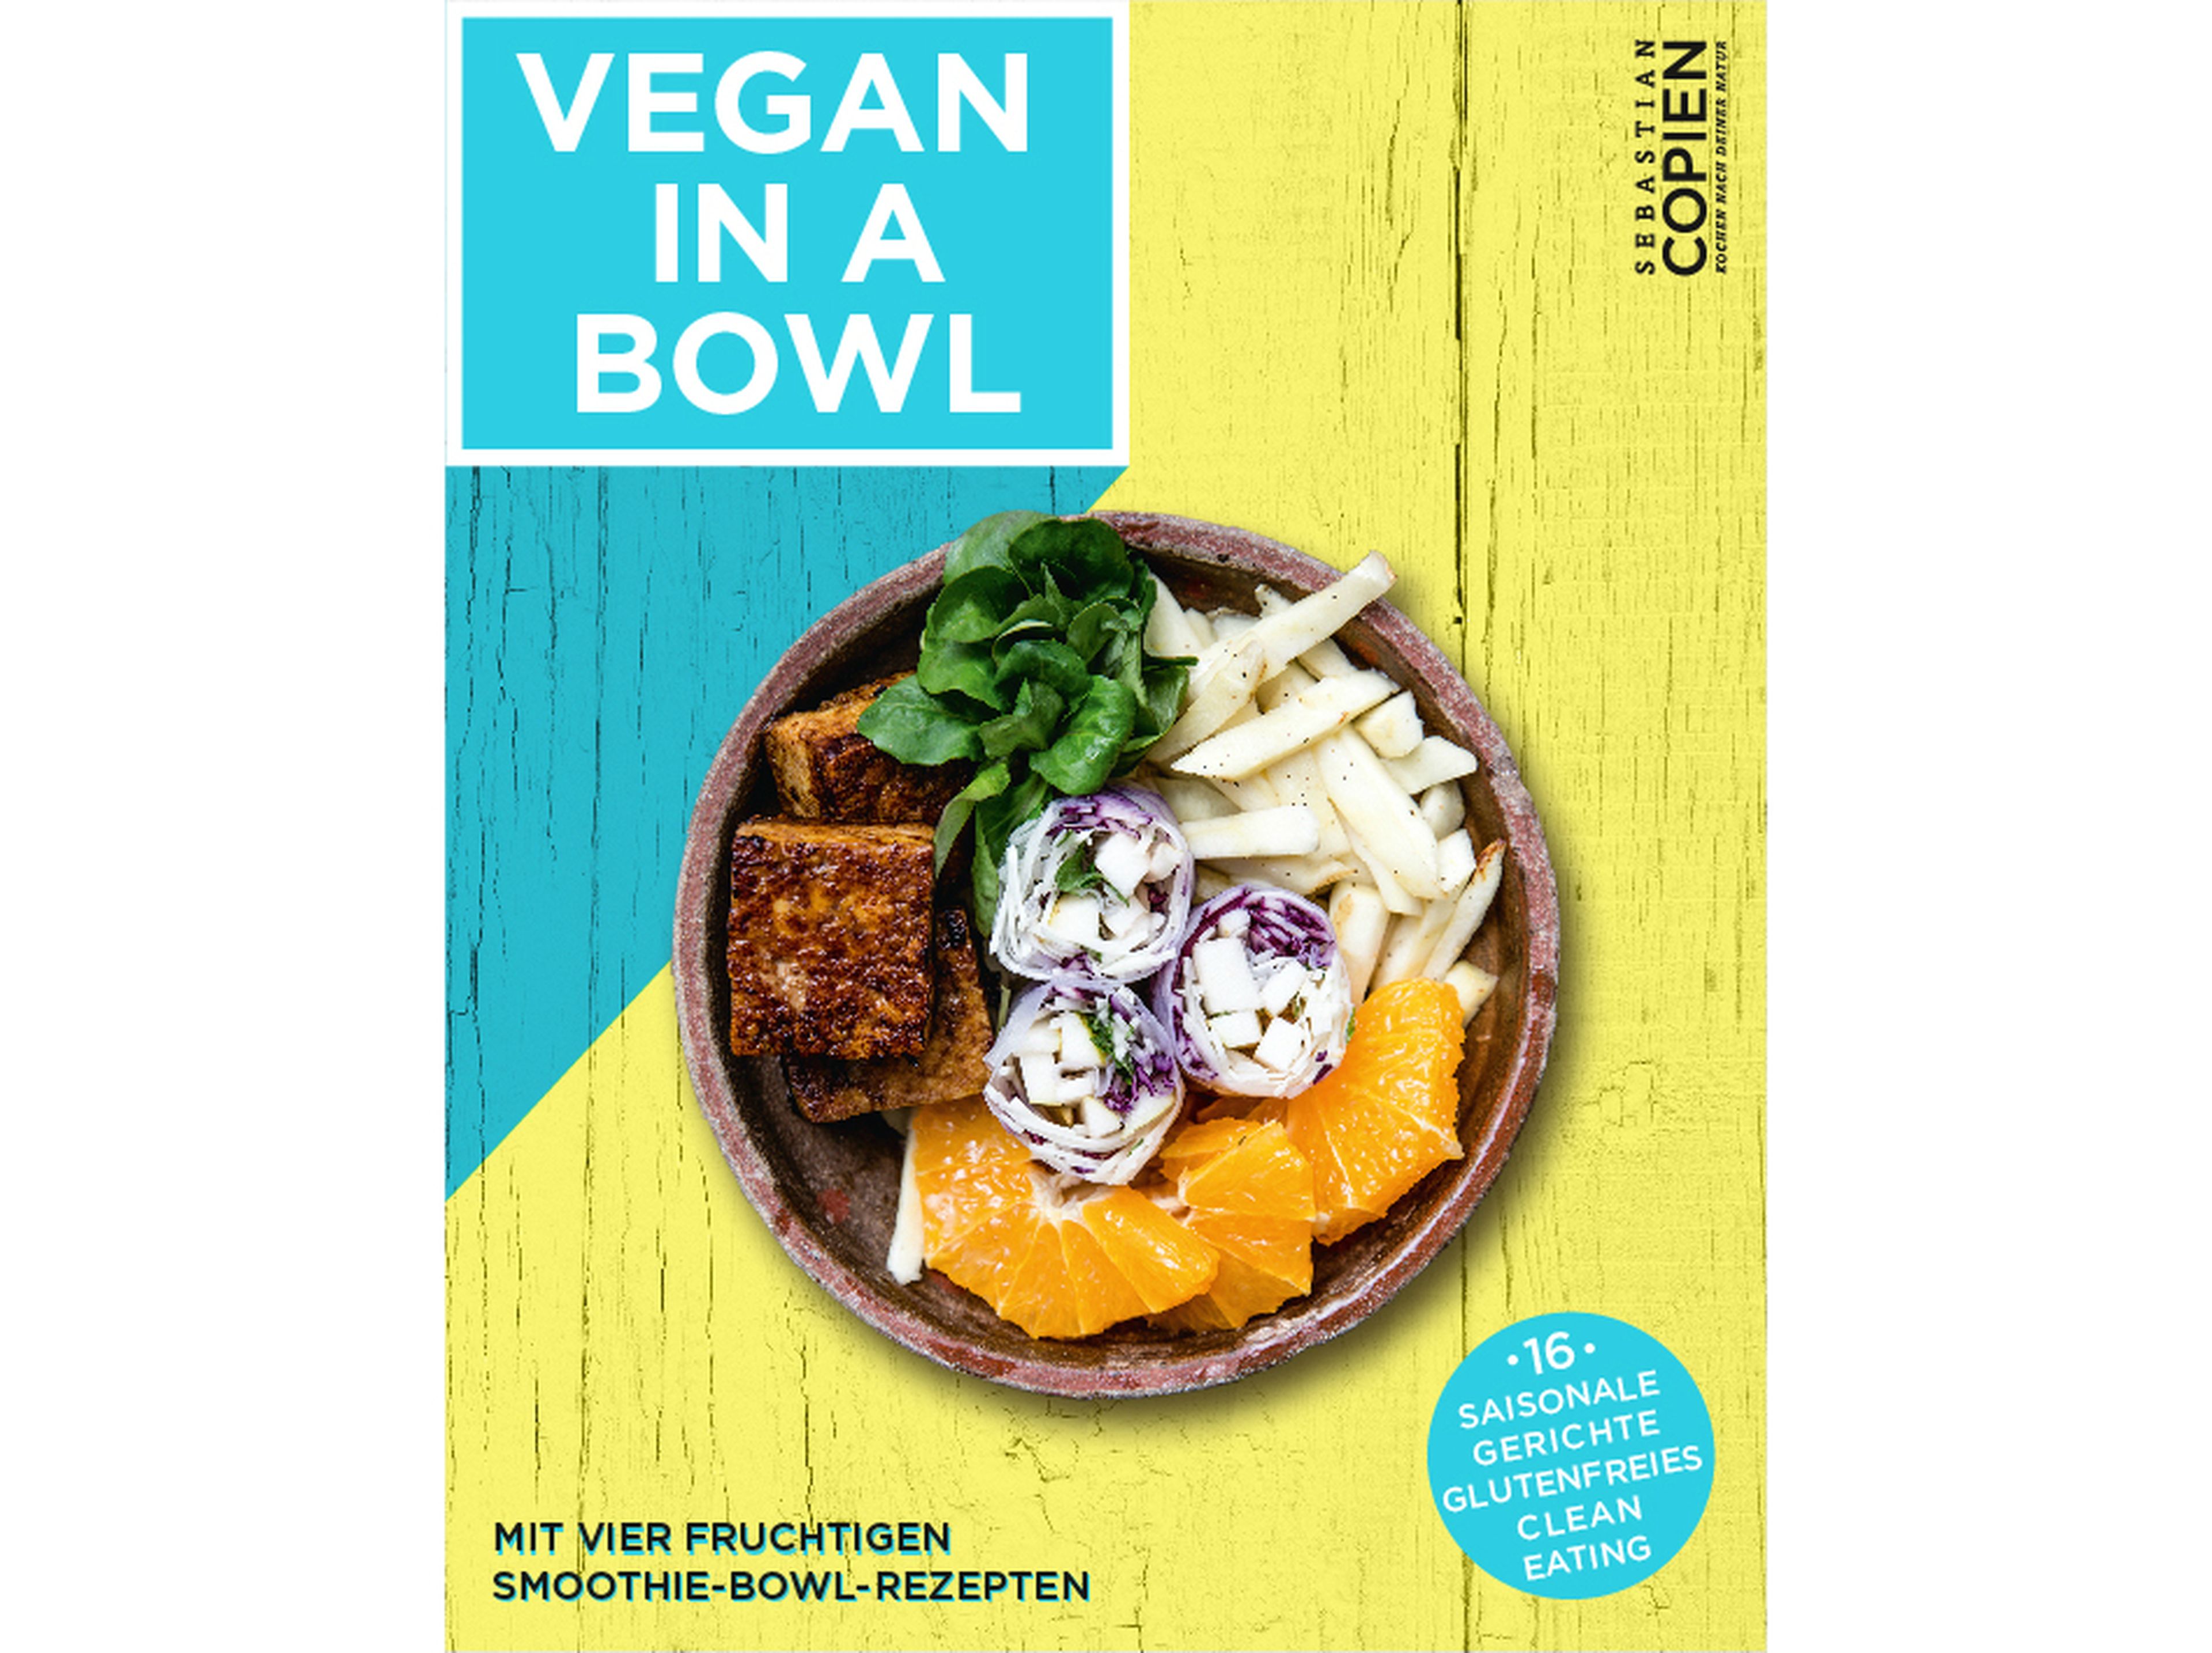 Mehr Rezepte von mir findest du in meinem kostenlosen Ebook www.vegan-bowl.de!